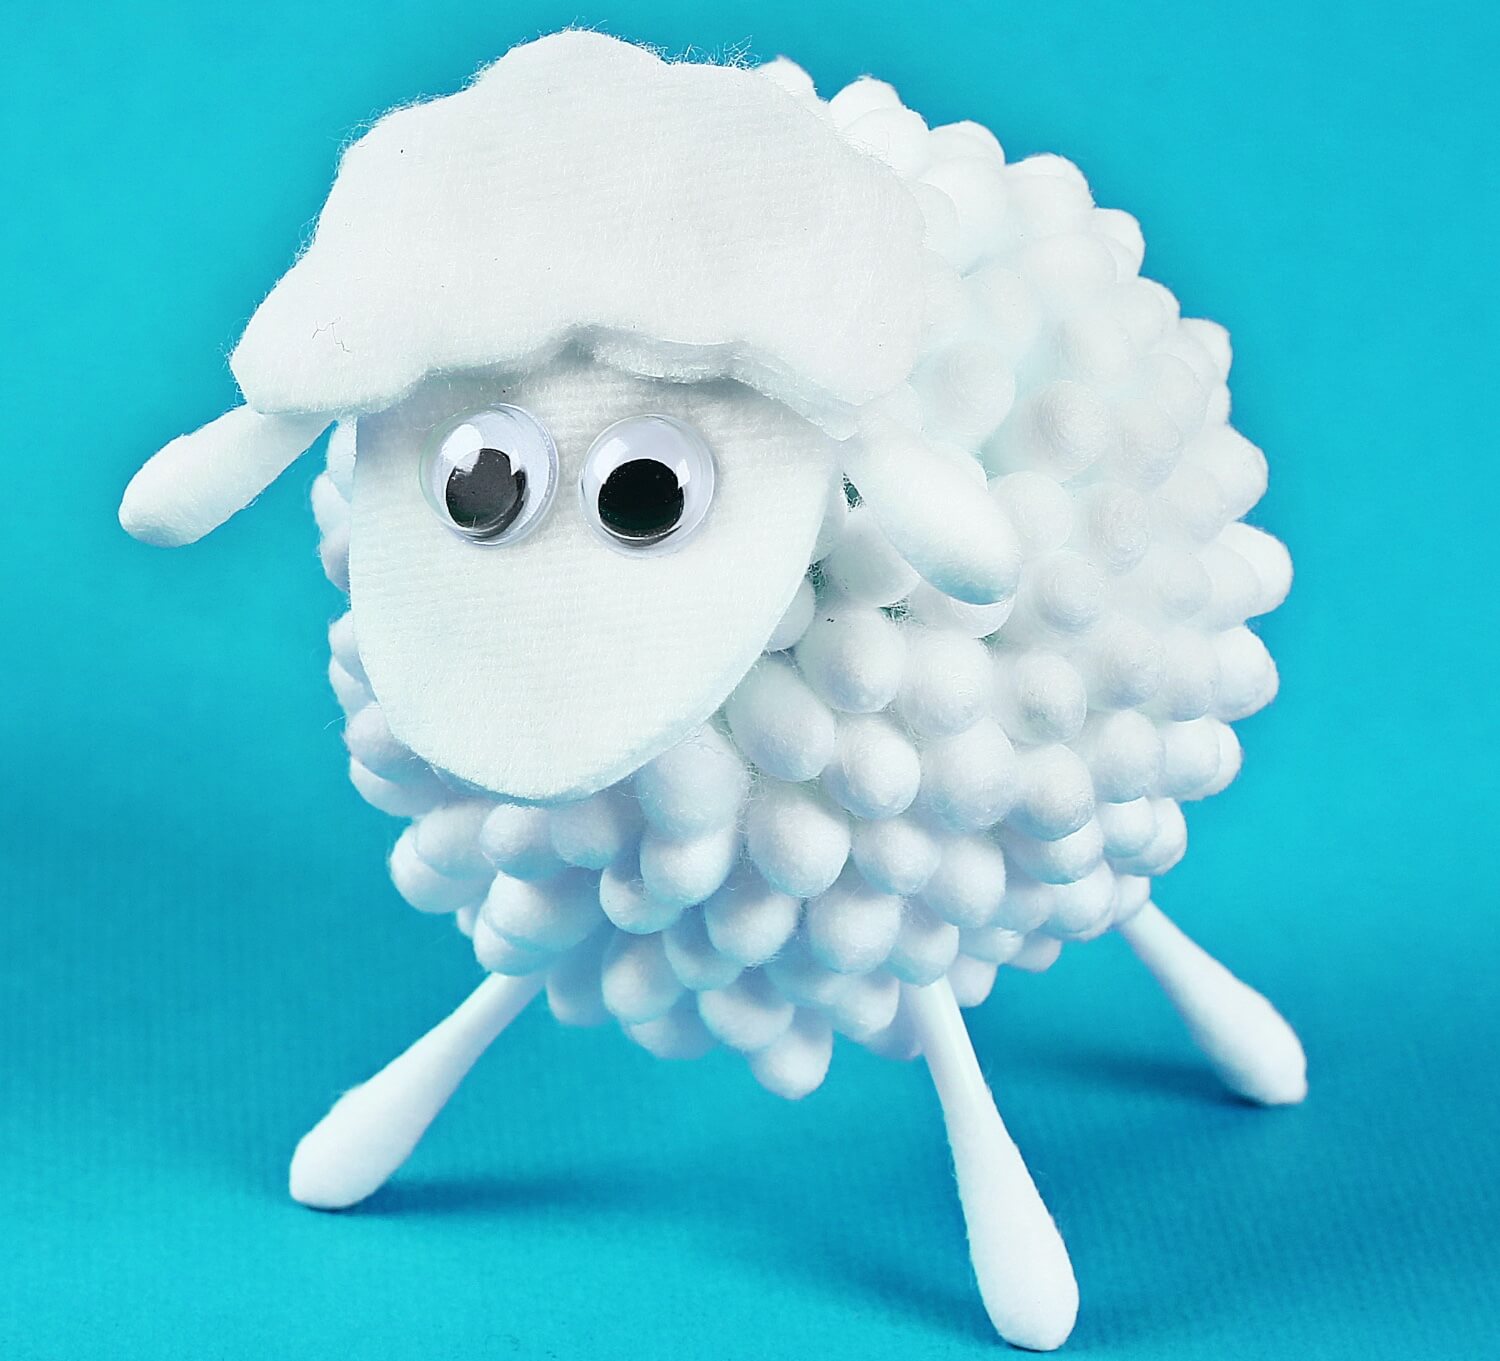 Oveja hecha de algodón, uno de los proyectos divertidos para hacer con los niños.